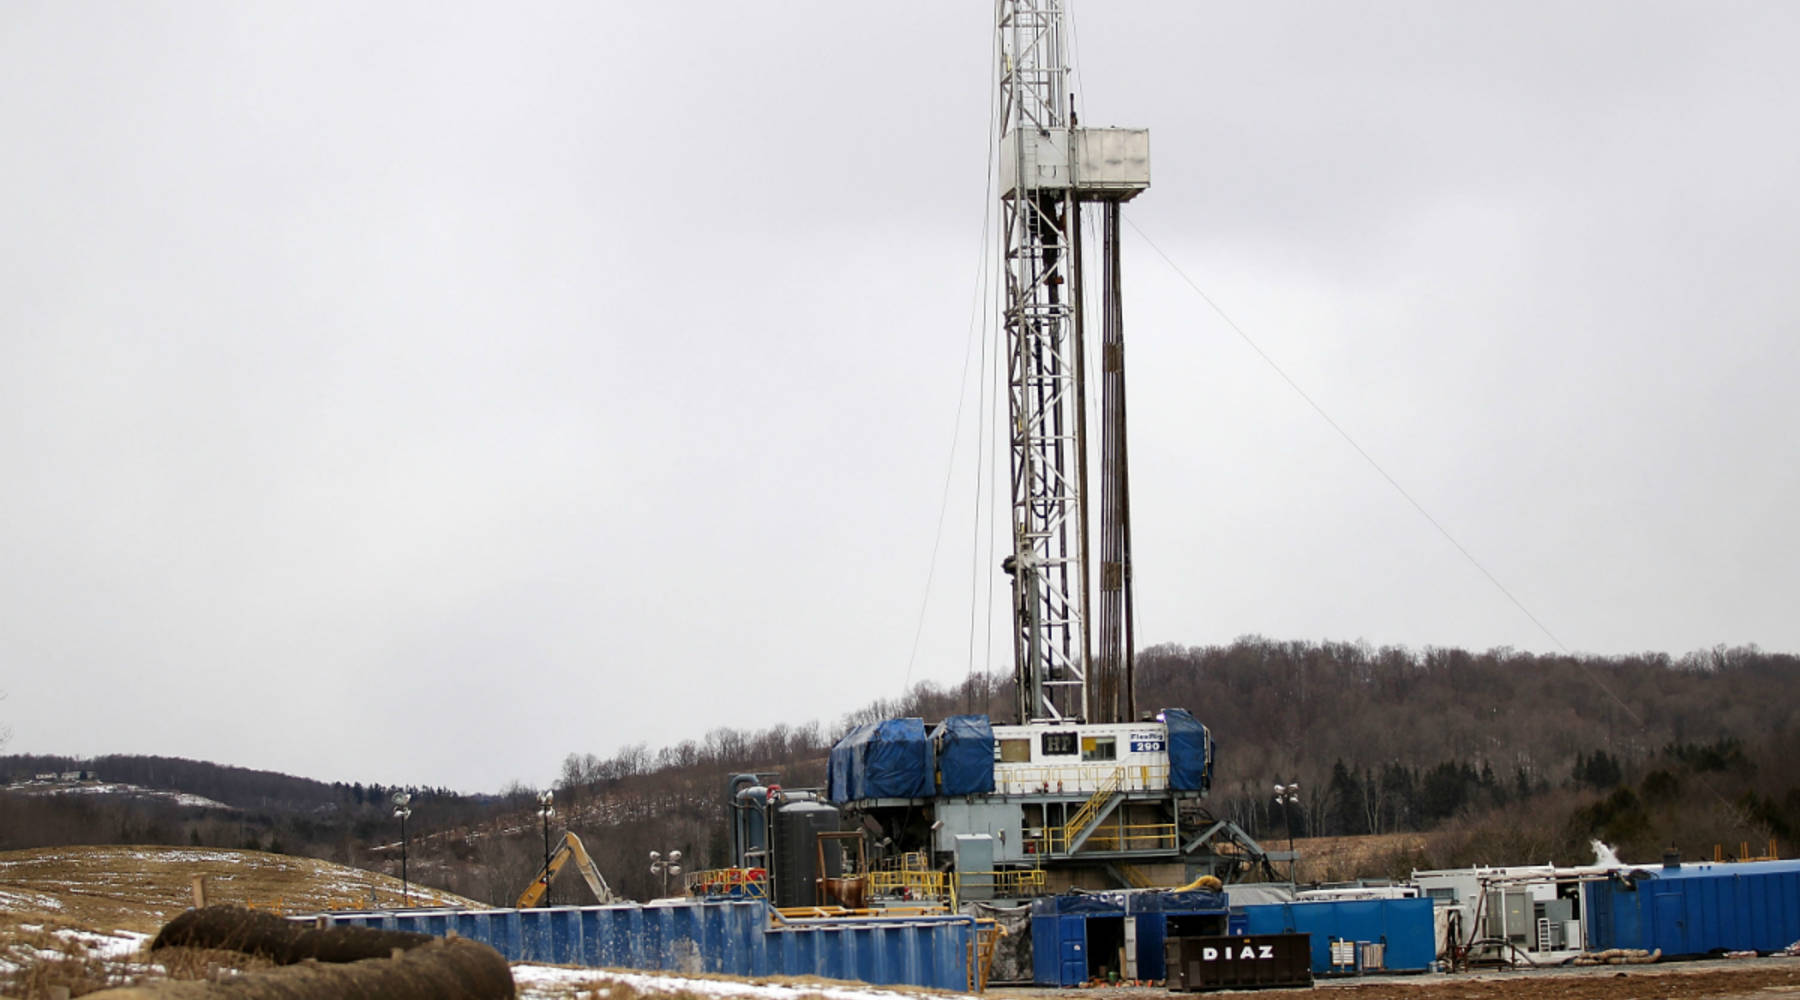 fracking equipment